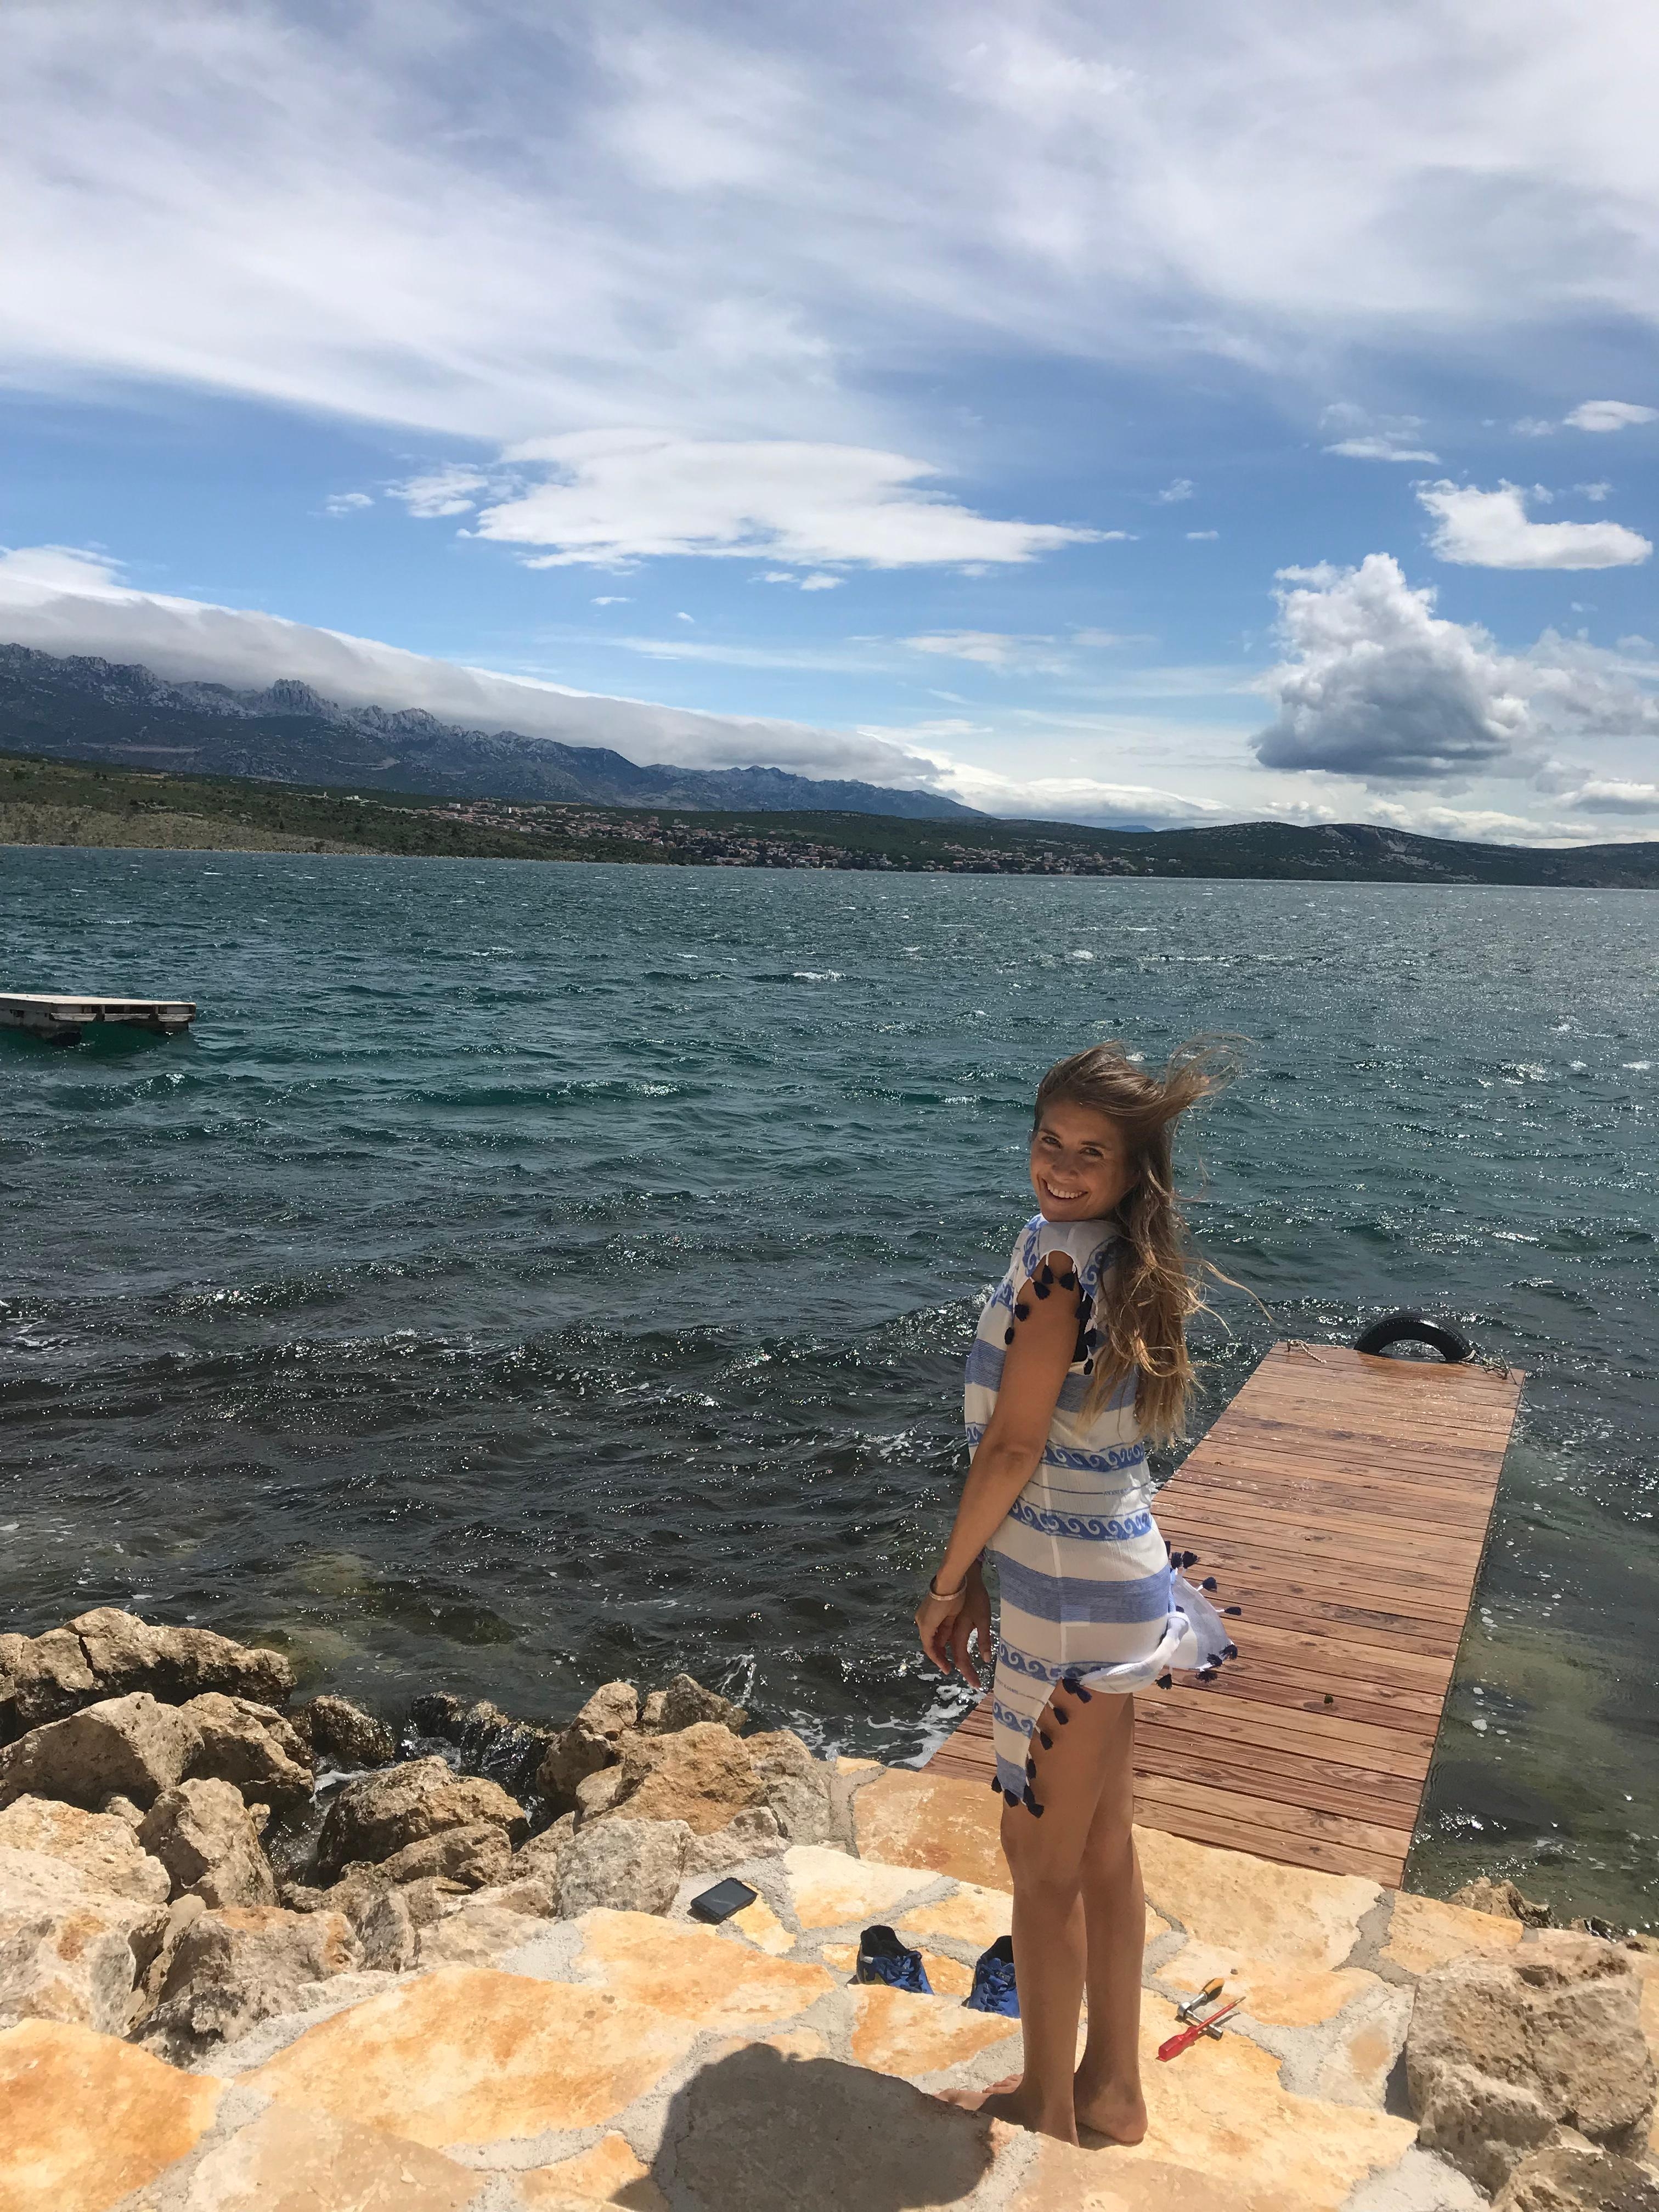 Cathys dritter Lieblingsplatz in ihrem Haus GoodCaMa in Kroatien ist der Steg #travel #airbnb #kroatien #meer #urlaub